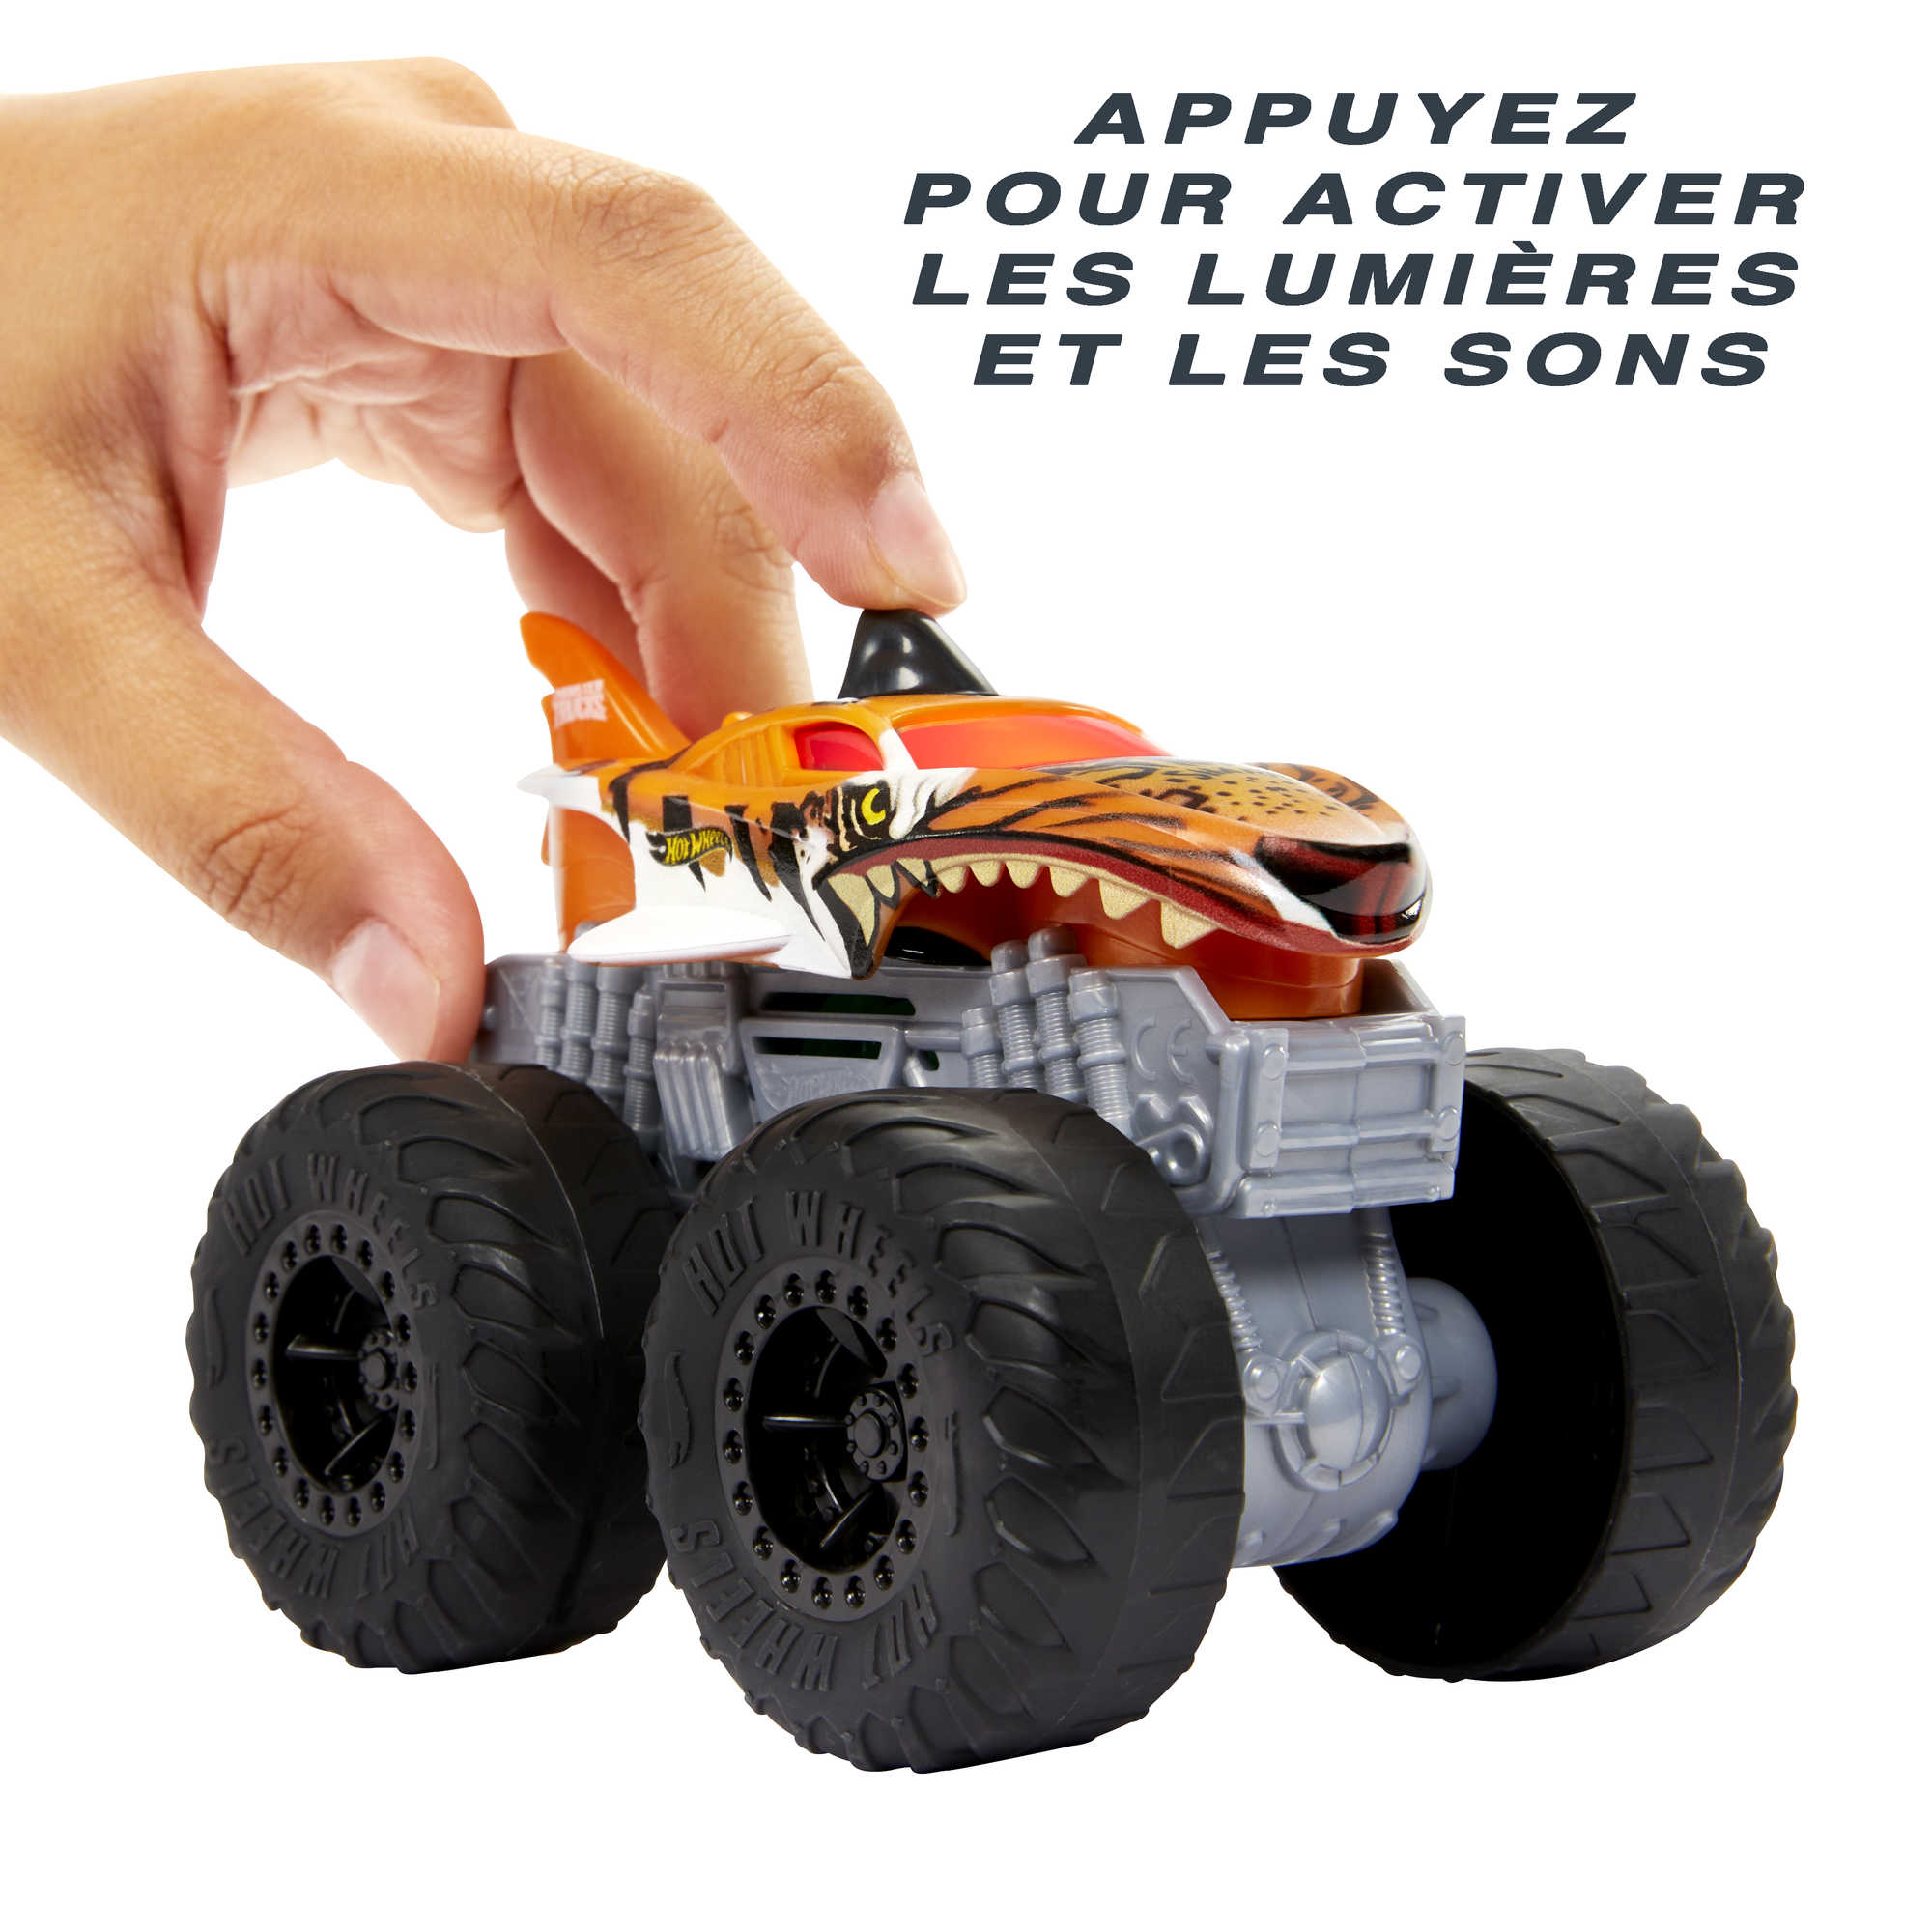 Hot Wheels Monster Trucks Coffret de 8 véhicules aux roues géantes, jouet  de voiture pour enfant, emballage durable, HGX21